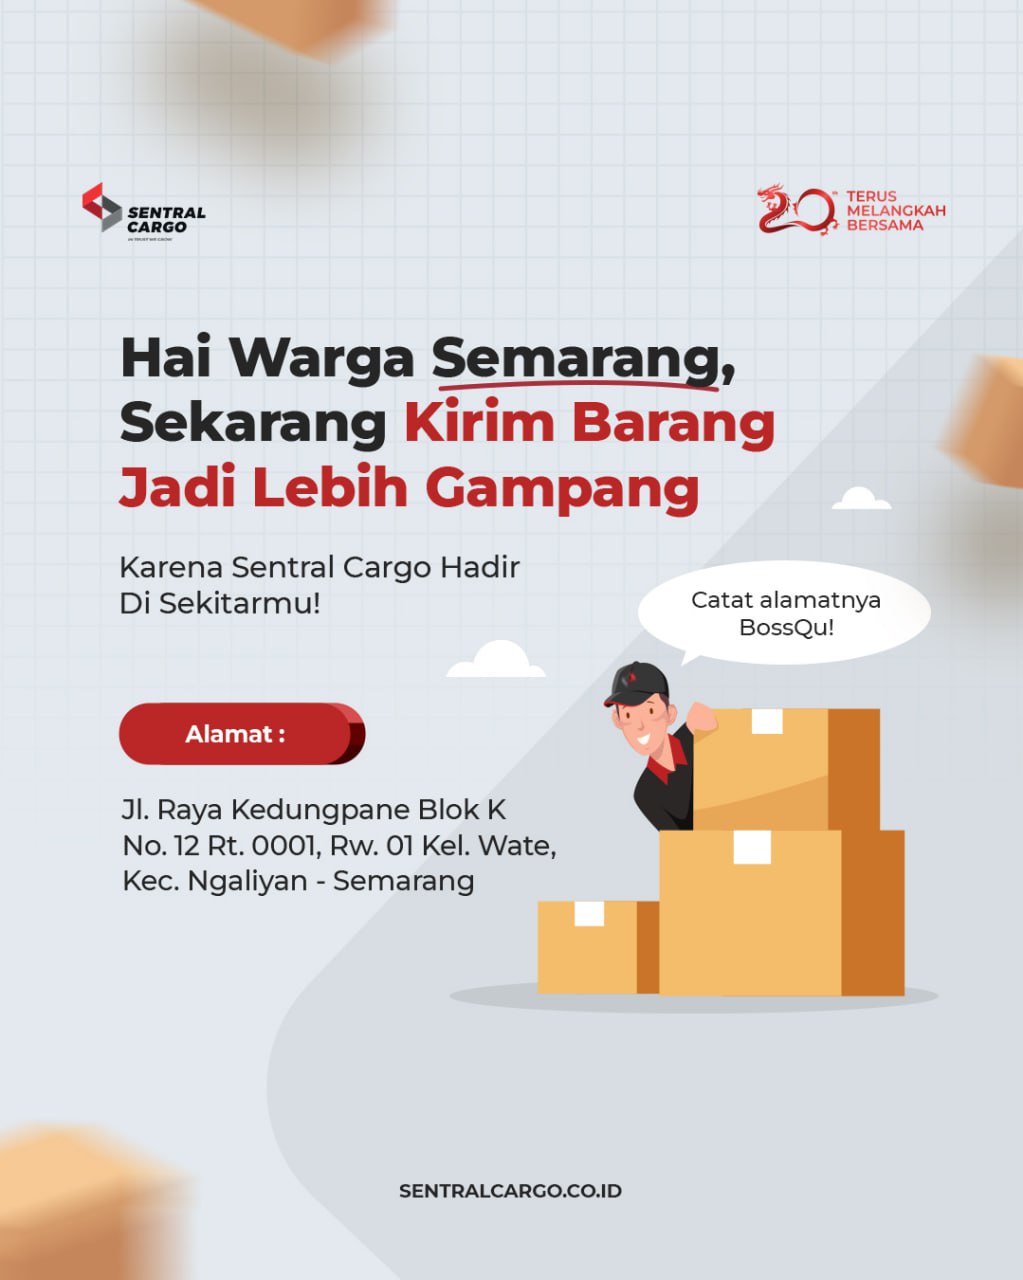 Mempermudah Pengiriman  Barang di Semarang : Sentral Cargo Gudang Baru Telah Dibuka!